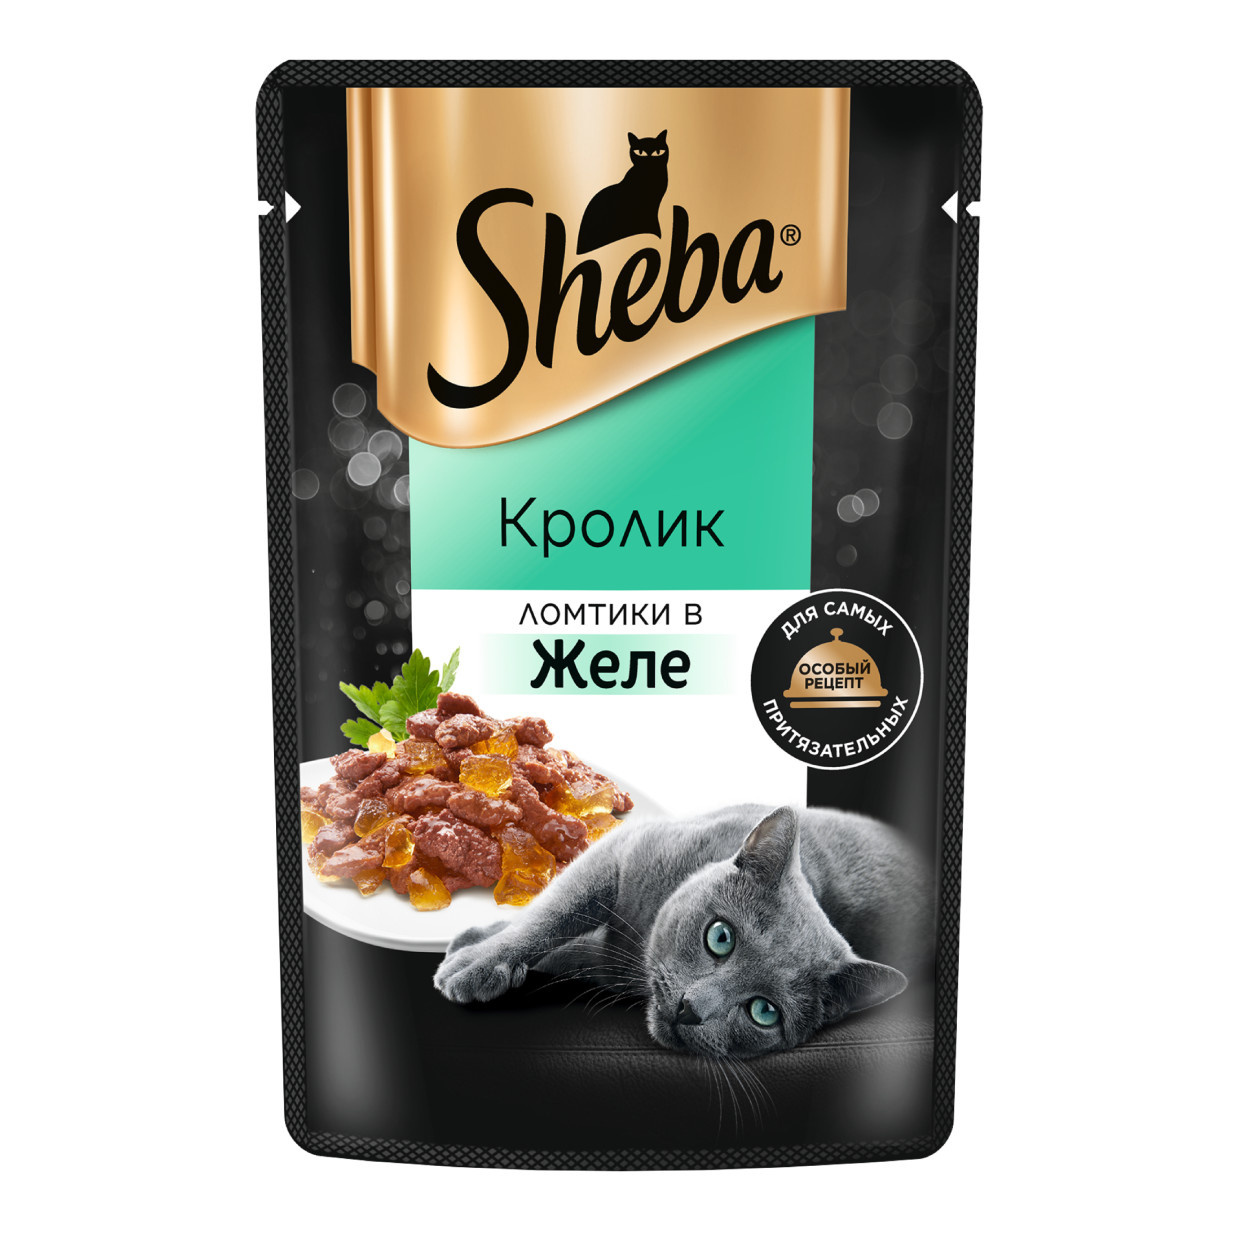 Sheba Sheba влажный корм для кошек «Ломтики в желе с кроликом» (75 г)